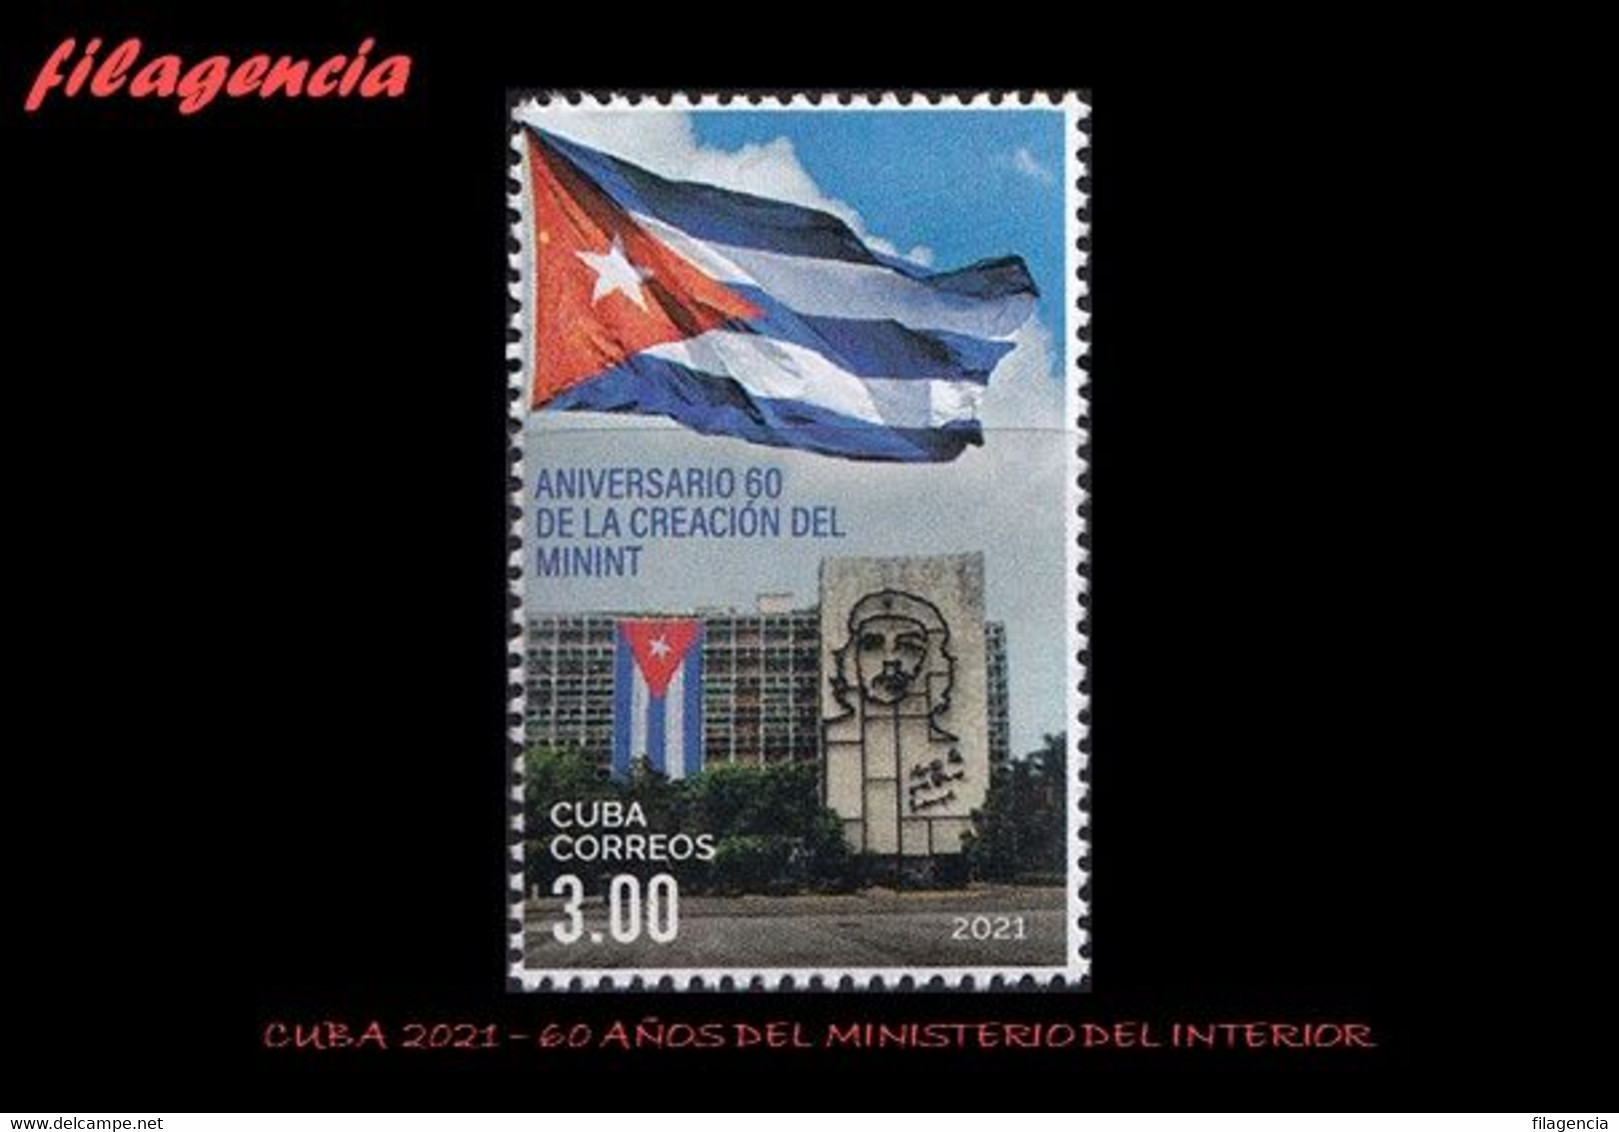 AMERICA. CUBA MINT. 2021 60 ANIVERSARIO DEL MINISTERIO DEL INTERIOR. CHE GUEVARA - Unused Stamps